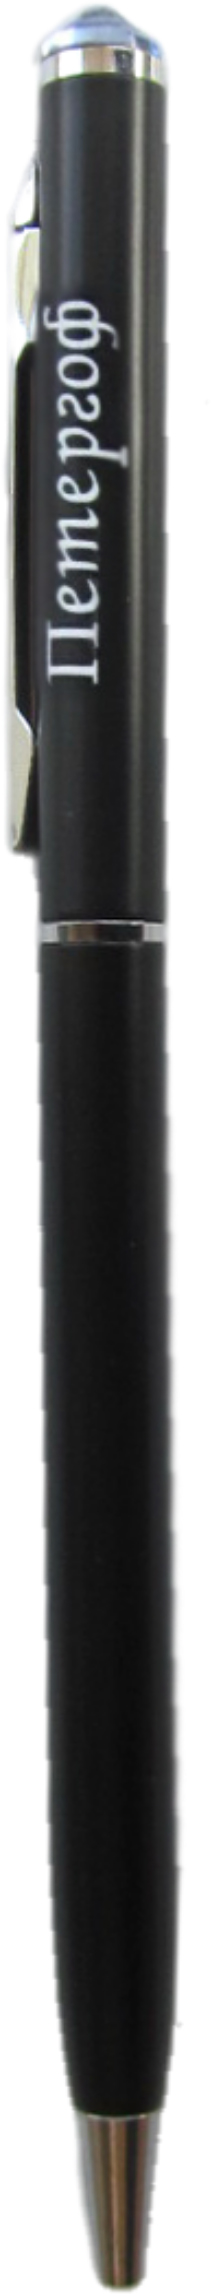 Ручка металлическая со стразом "Петергоф", цвет черный